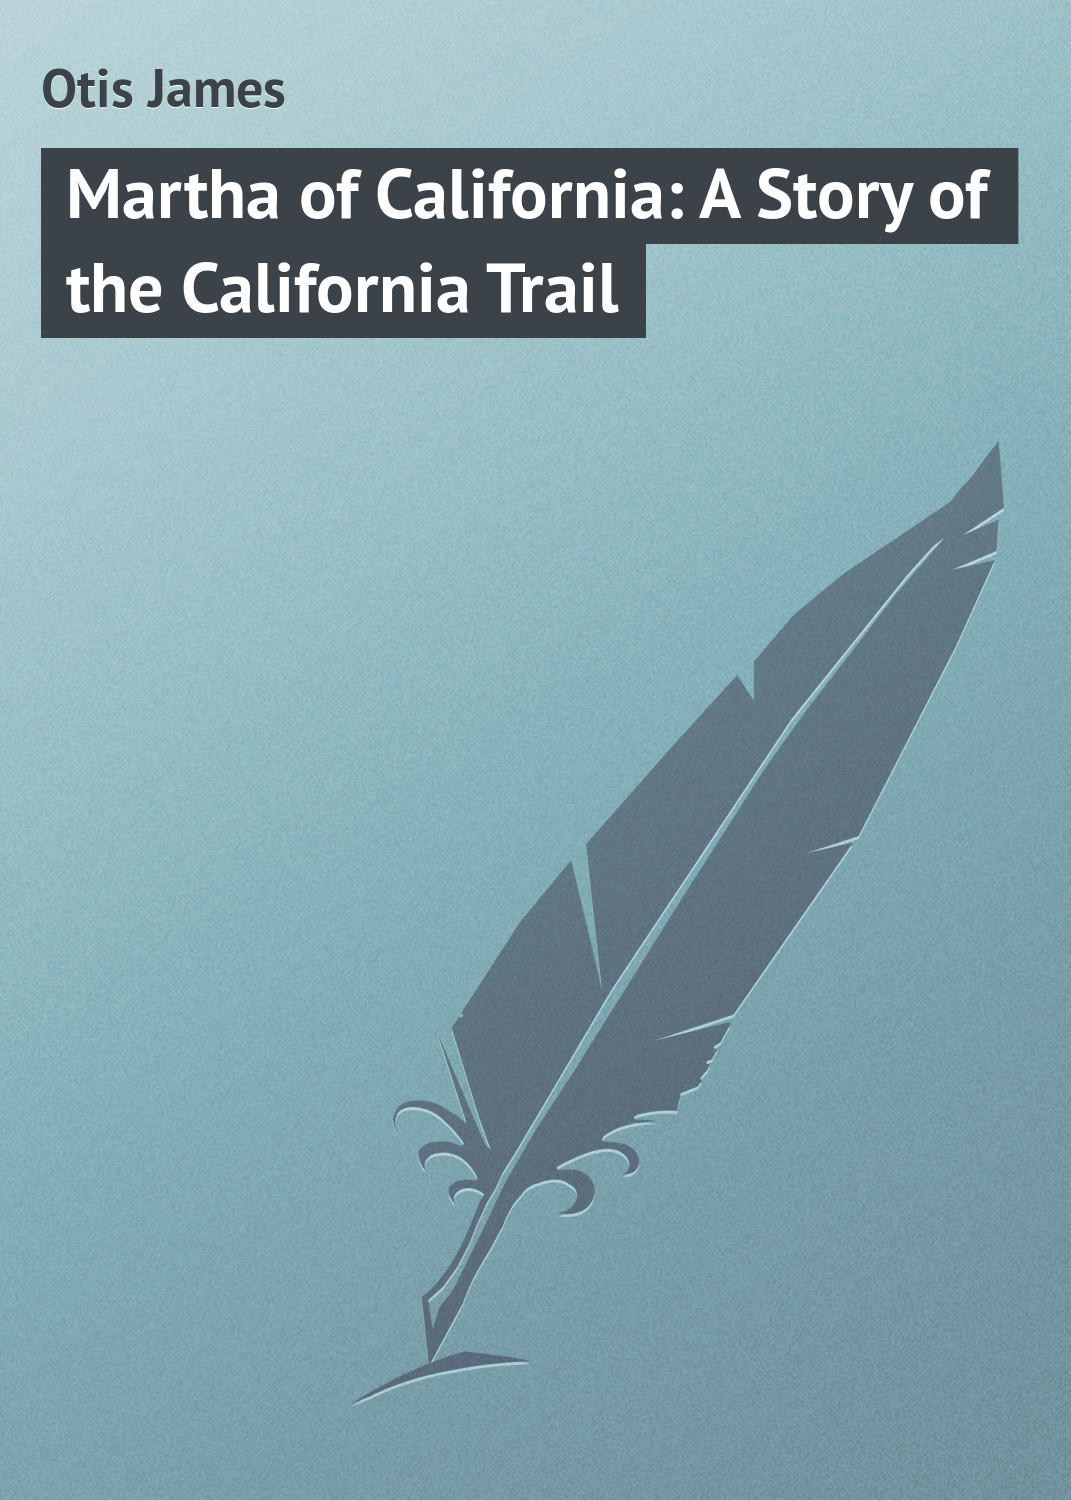 Книга Martha of California: A Story of the California Trail из серии , созданная James Otis, может относится к жанру Зарубежная классика. Стоимость электронной книги Martha of California: A Story of the California Trail с идентификатором 23149643 составляет 5.99 руб.